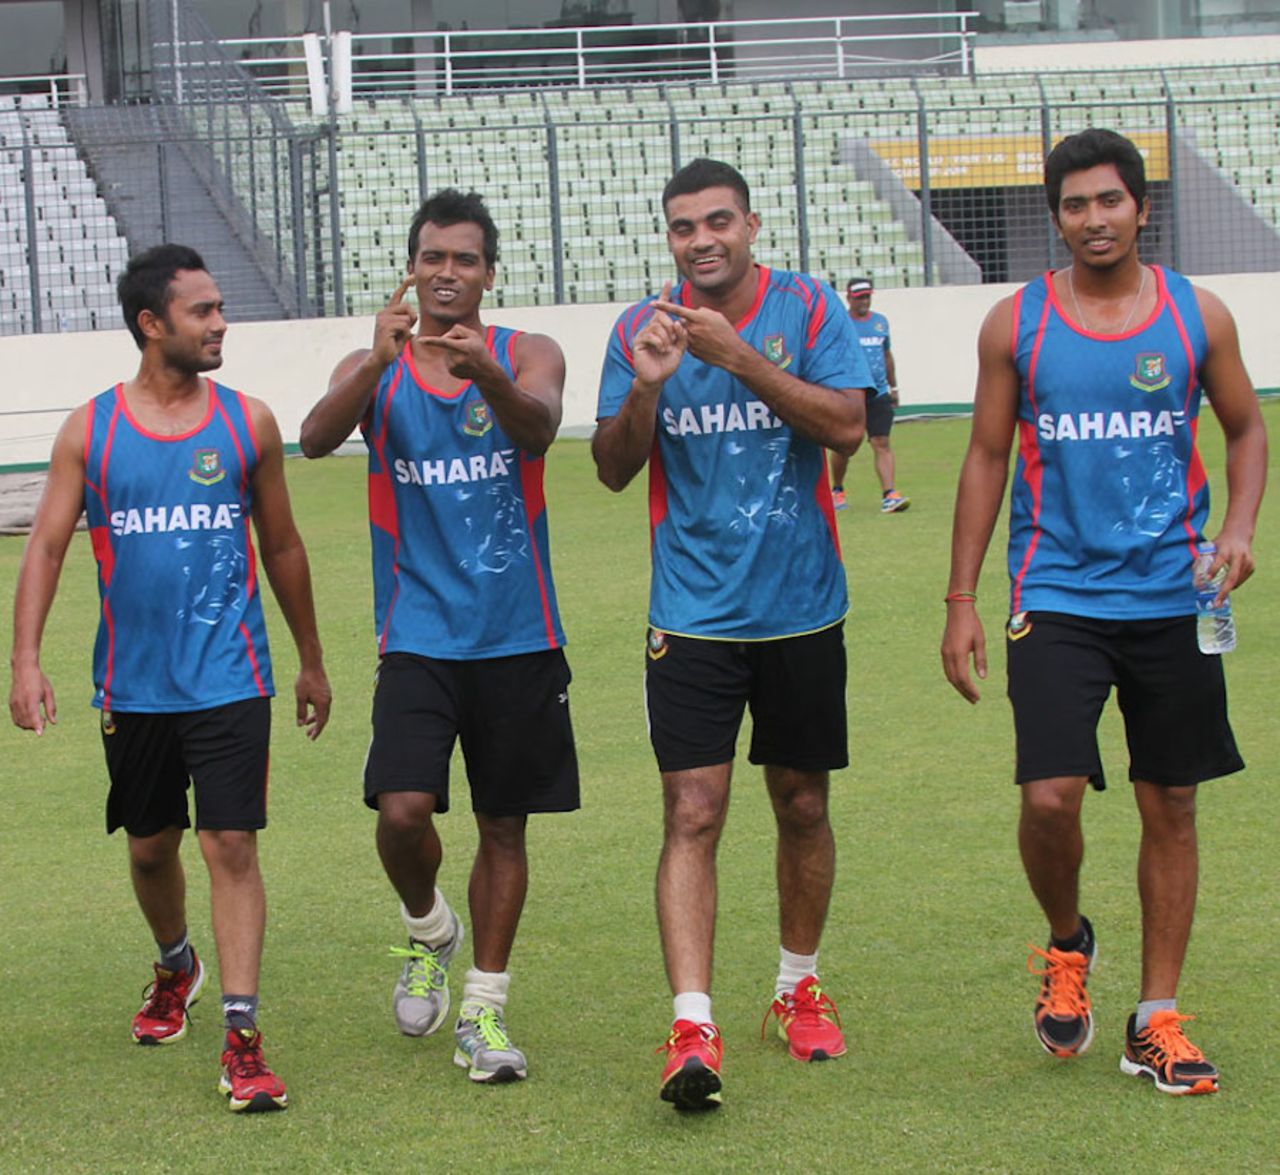 Rubel Hossain and Ziaur Rahman gesture during team training, Dhaka, May 26, 2014